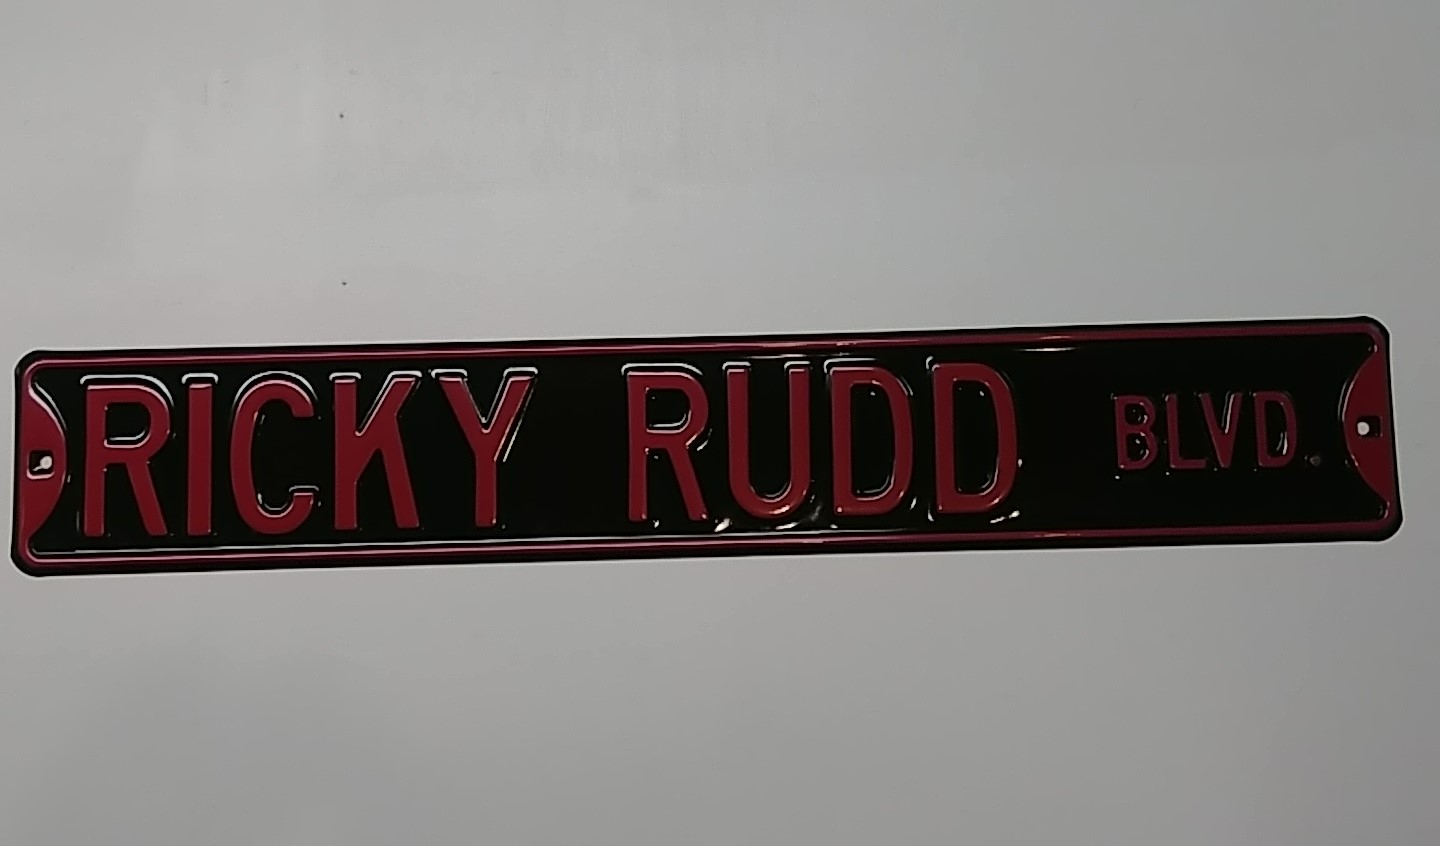 2000 Ricky Rudd Blvd Sign